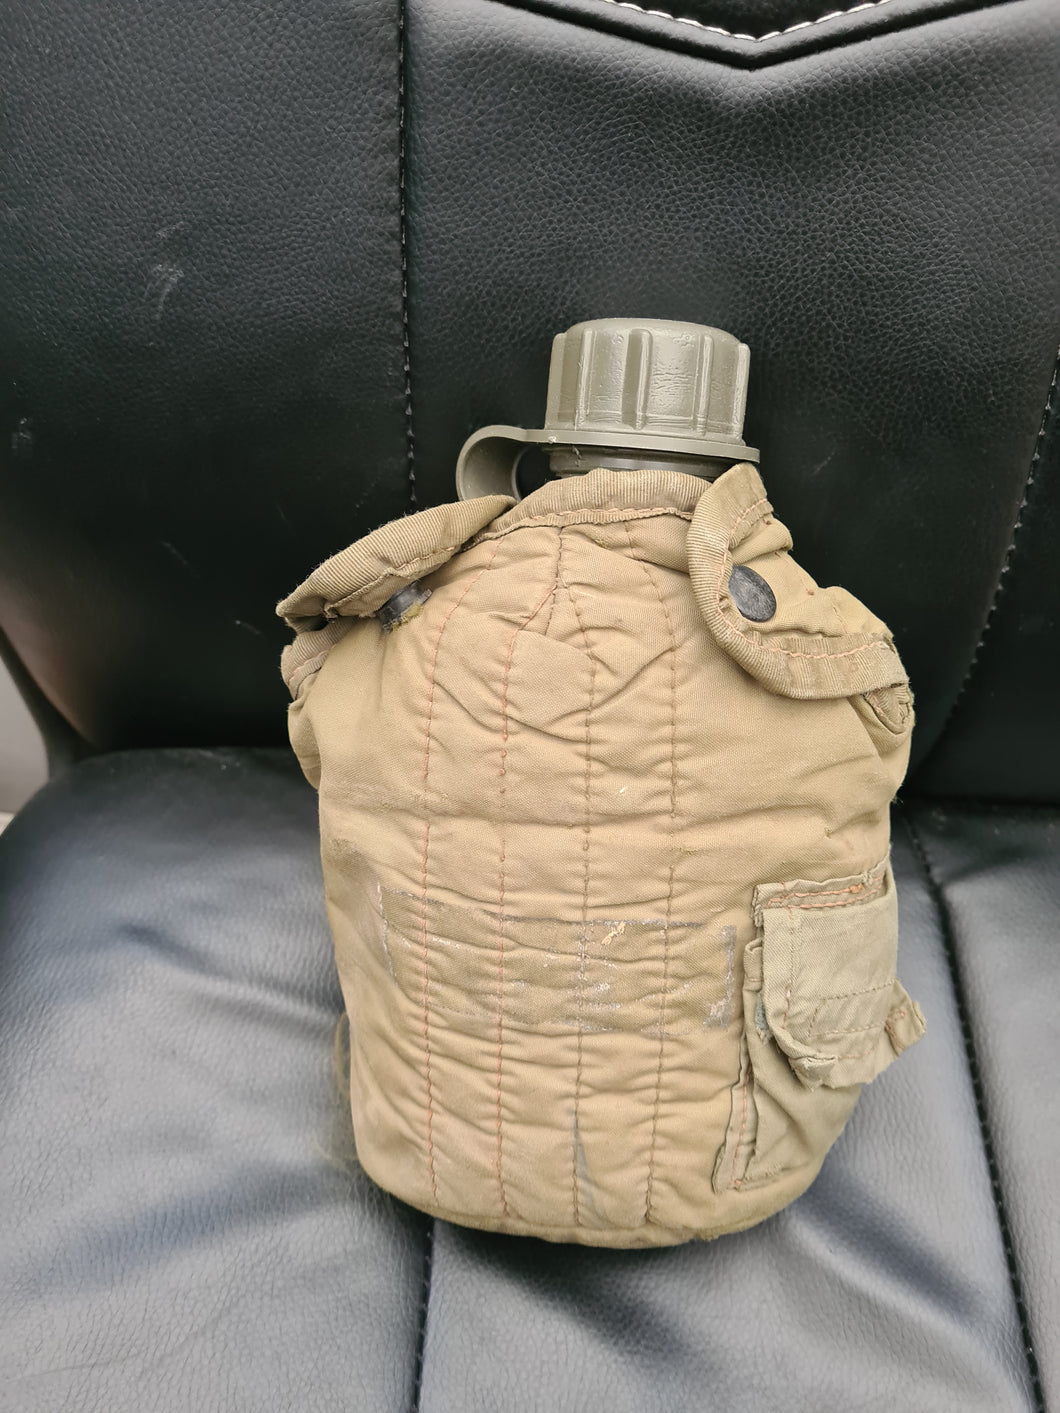 US Vietnam War 67 pattern Water bottle cover plus bottle